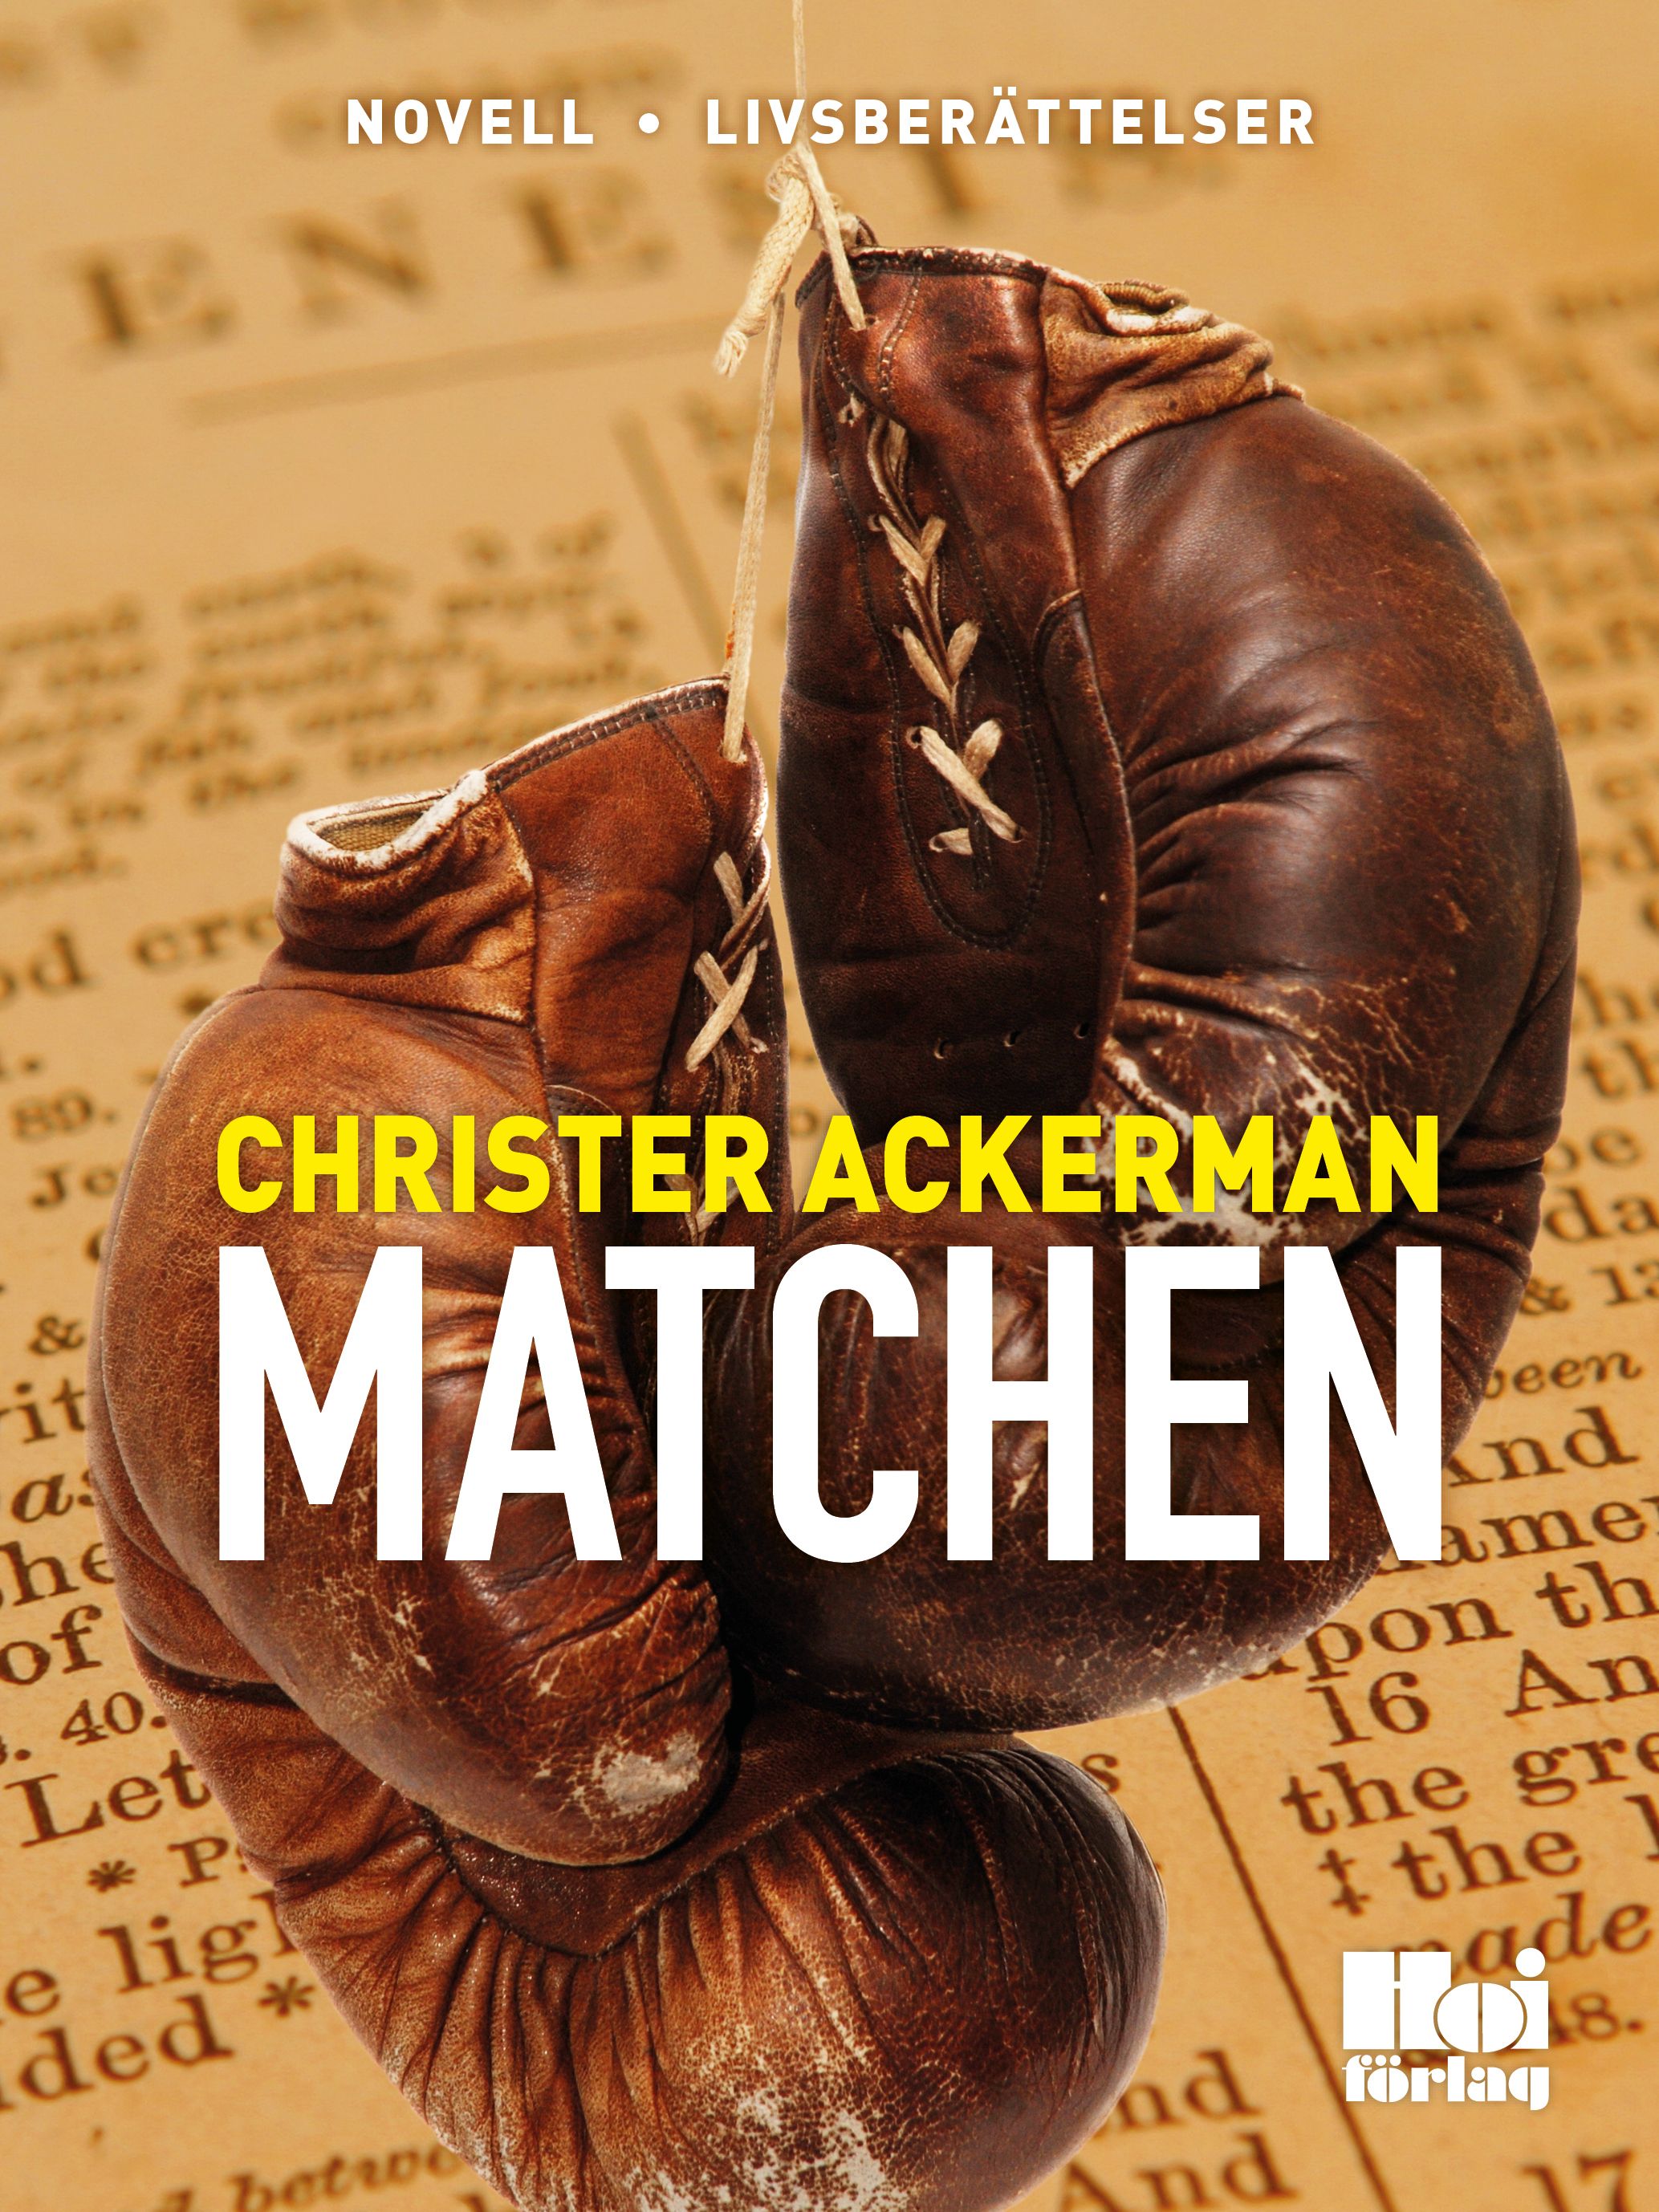 Matchen, e-bok av Christer Ackerman